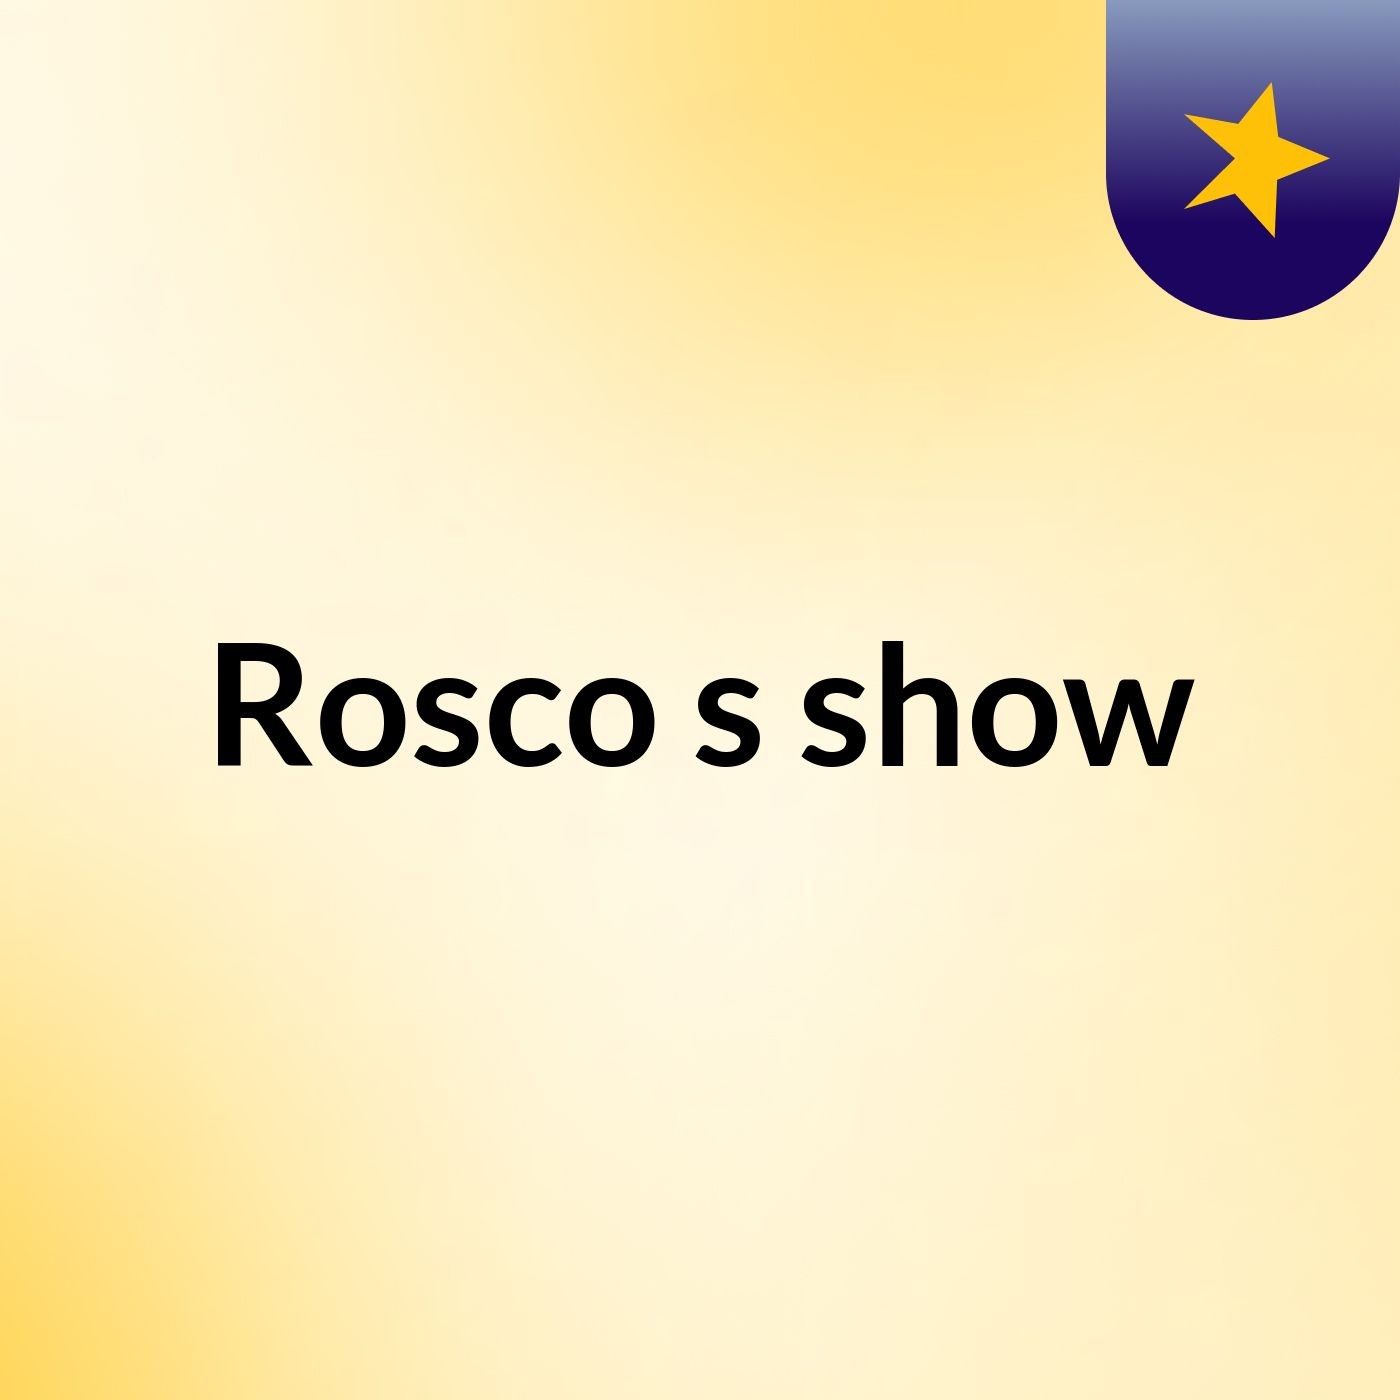 Rosco's show